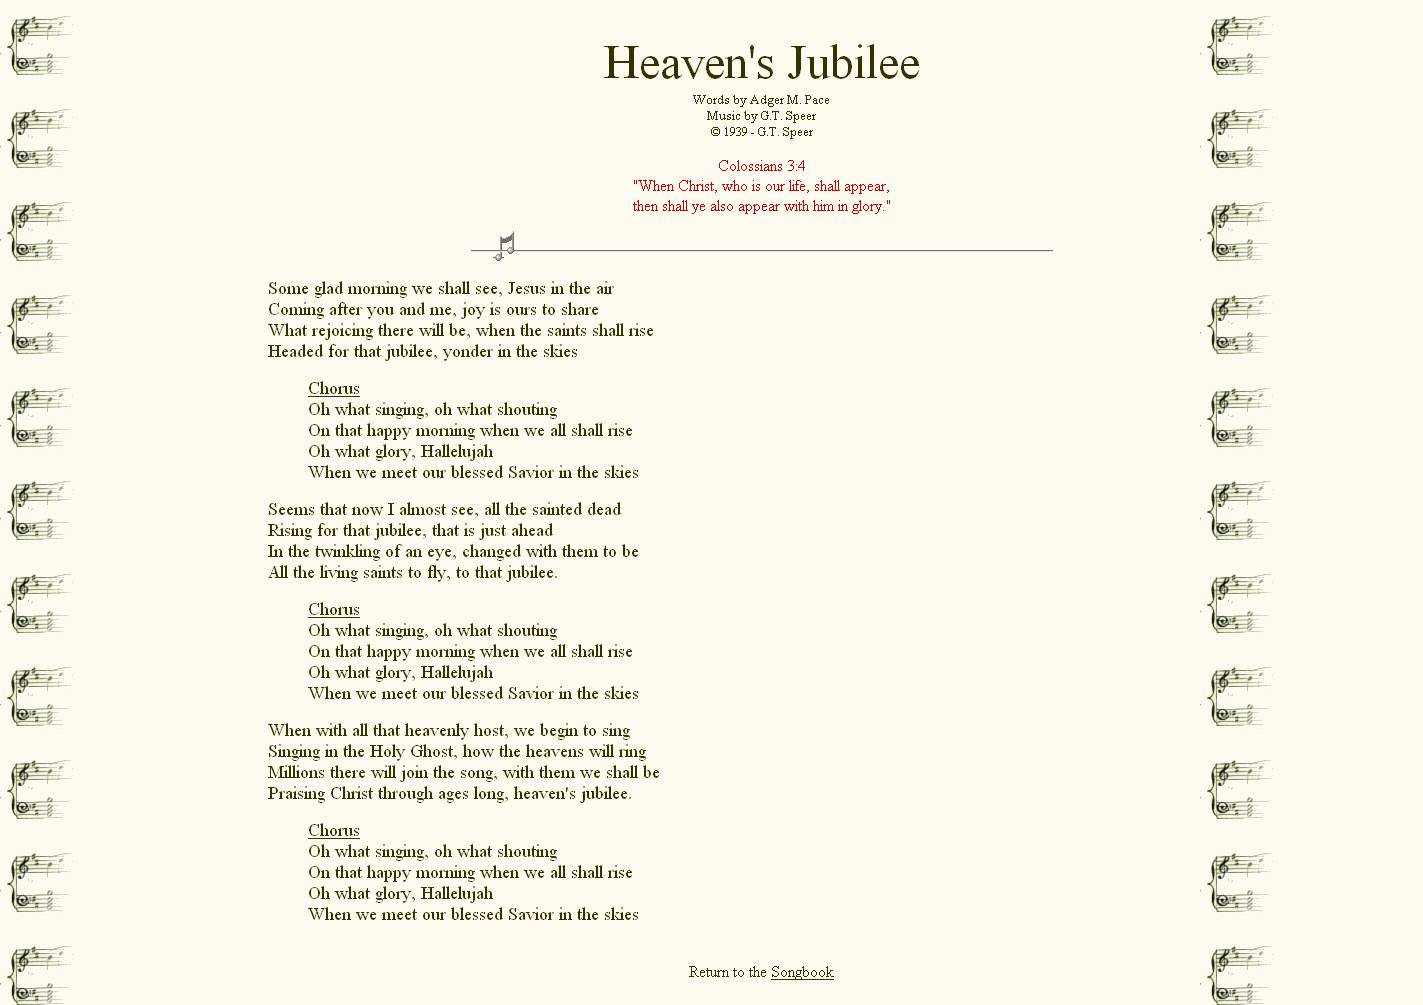 36. Heaven's Jubilee